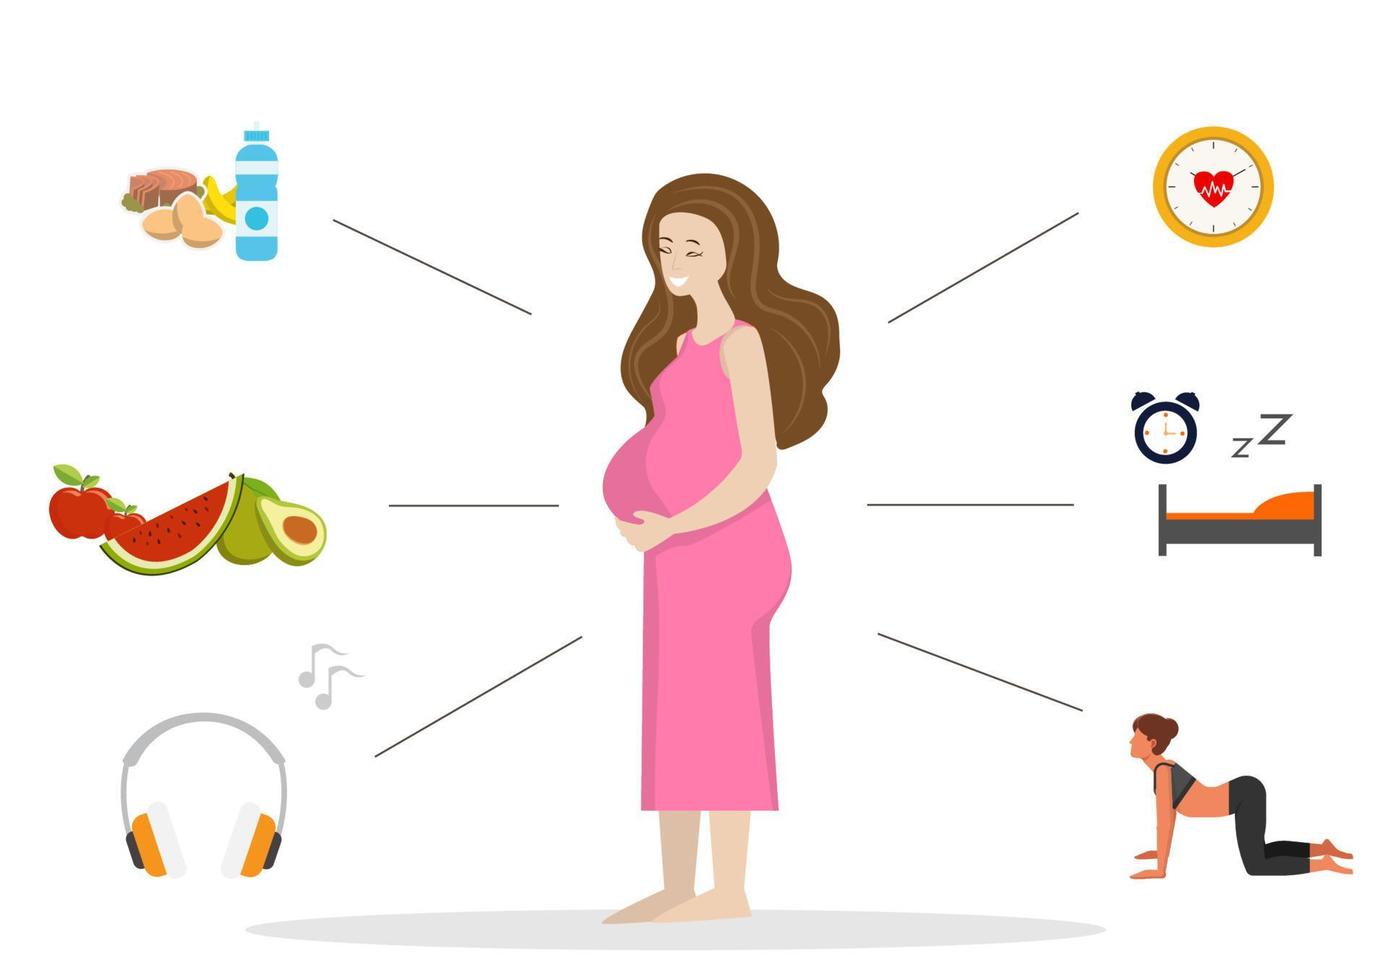 donna incinta è necessario nutrire il bambino nello stomaco e fare esercizio fisico leggero, mangiare abbastanza cibo e riposare. vettore di illustrazione del fumetto in stile piatto